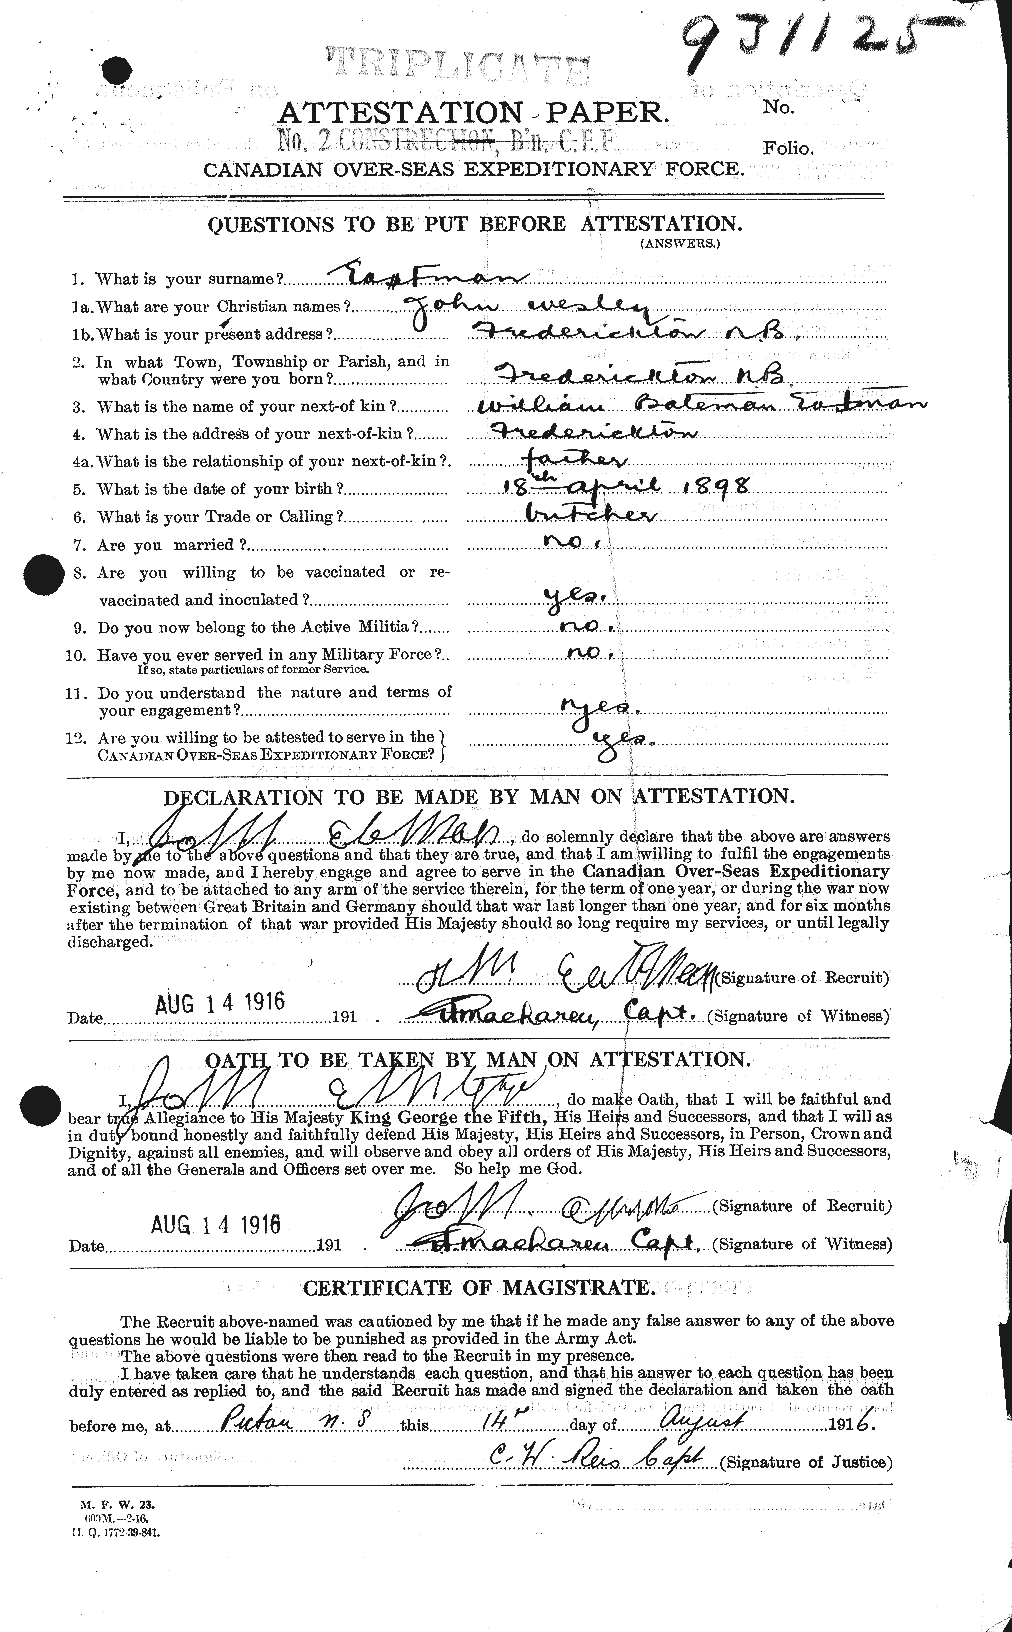 Dossiers du Personnel de la Première Guerre mondiale - CEC 308347a